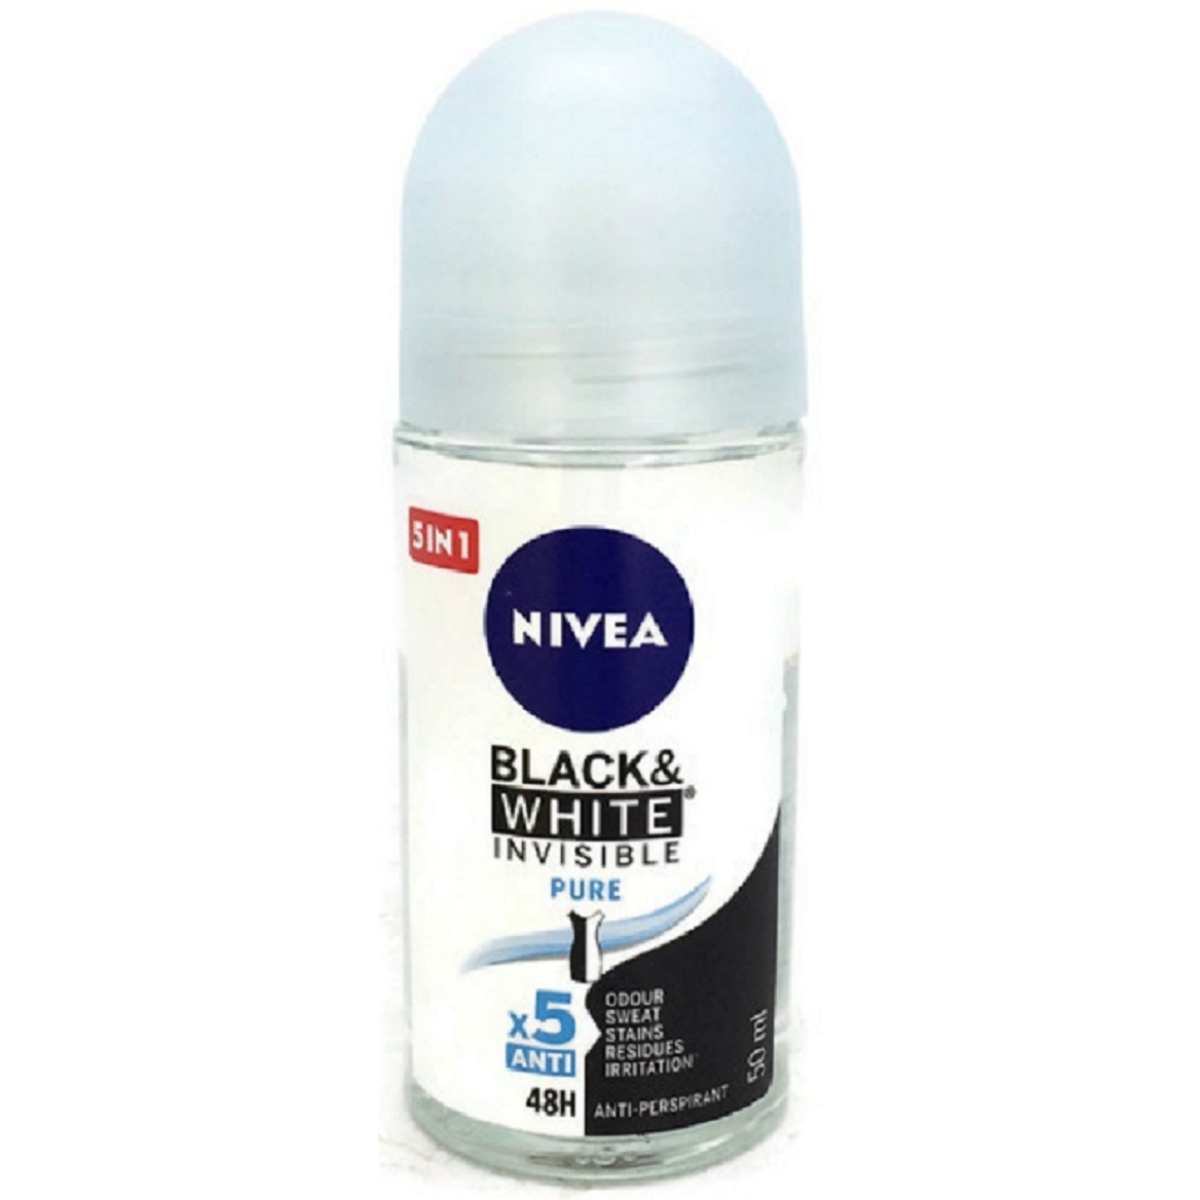 Nivea Roll On 50ml Black White Invisible Pure 48h Anti perspirant Anti transpirant.